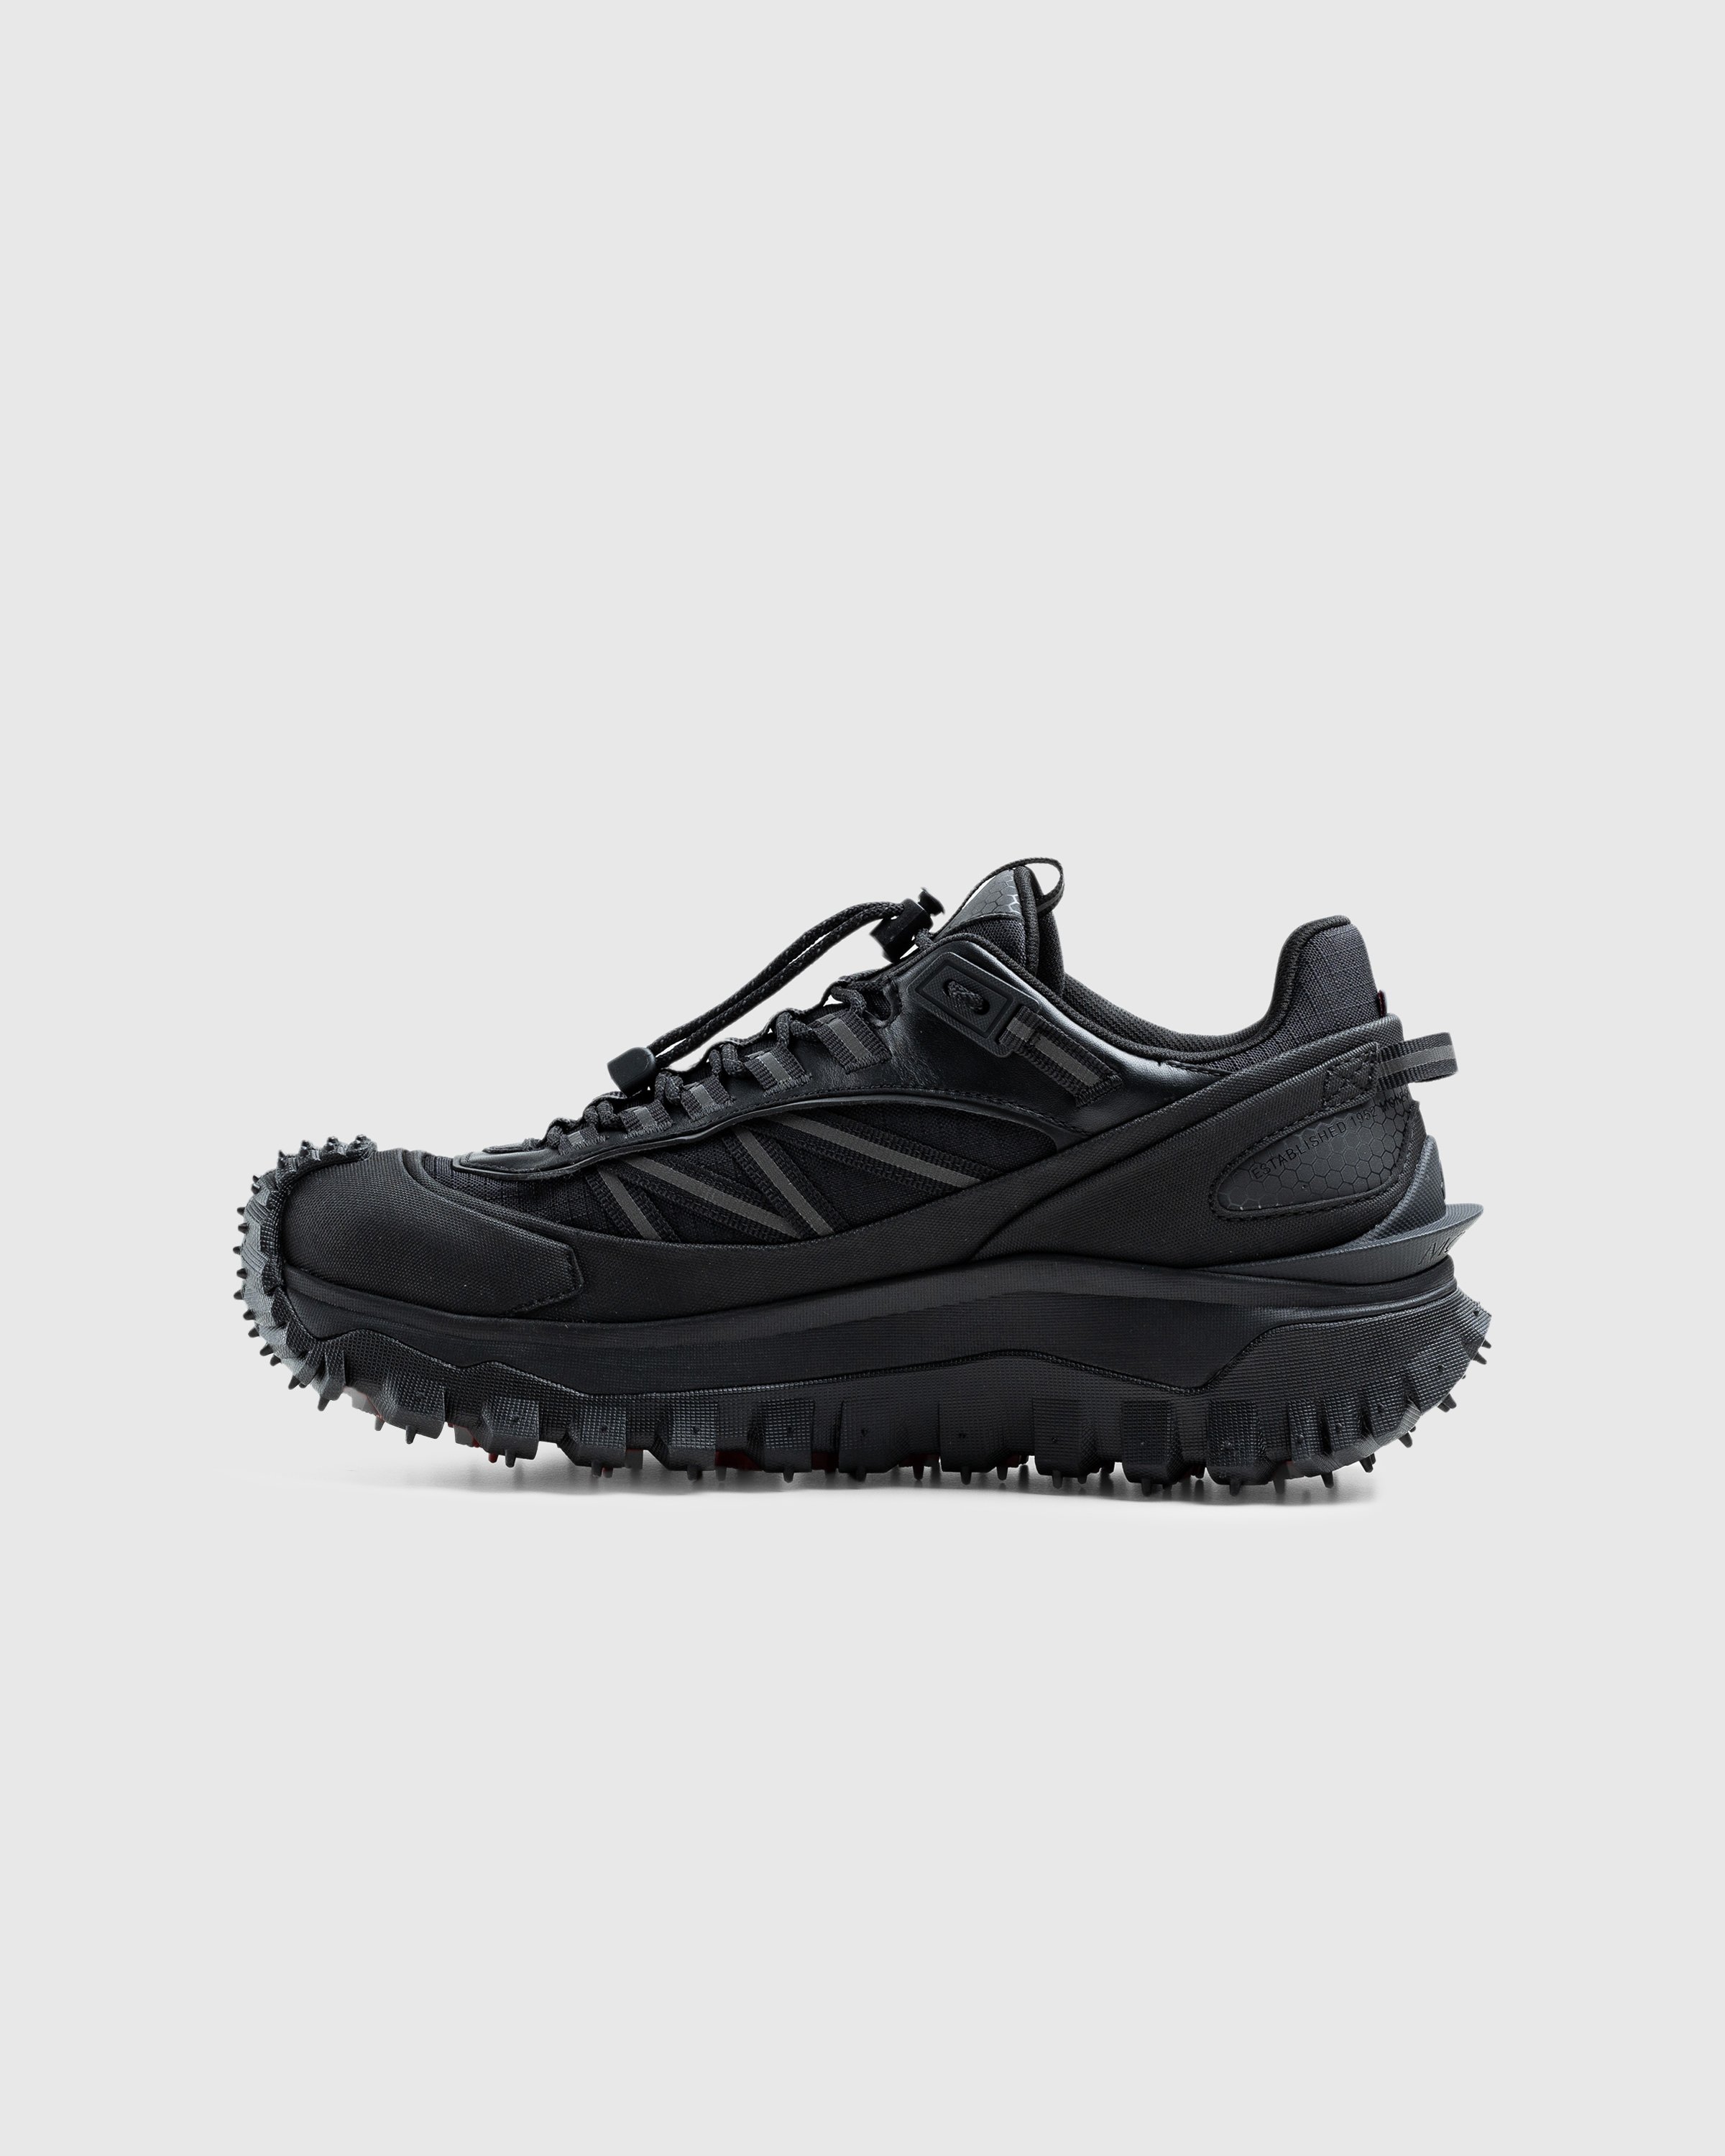 Moncler - Trailgrip Gtx Low Top Sneakers Black - Footwear - Black - Image 2